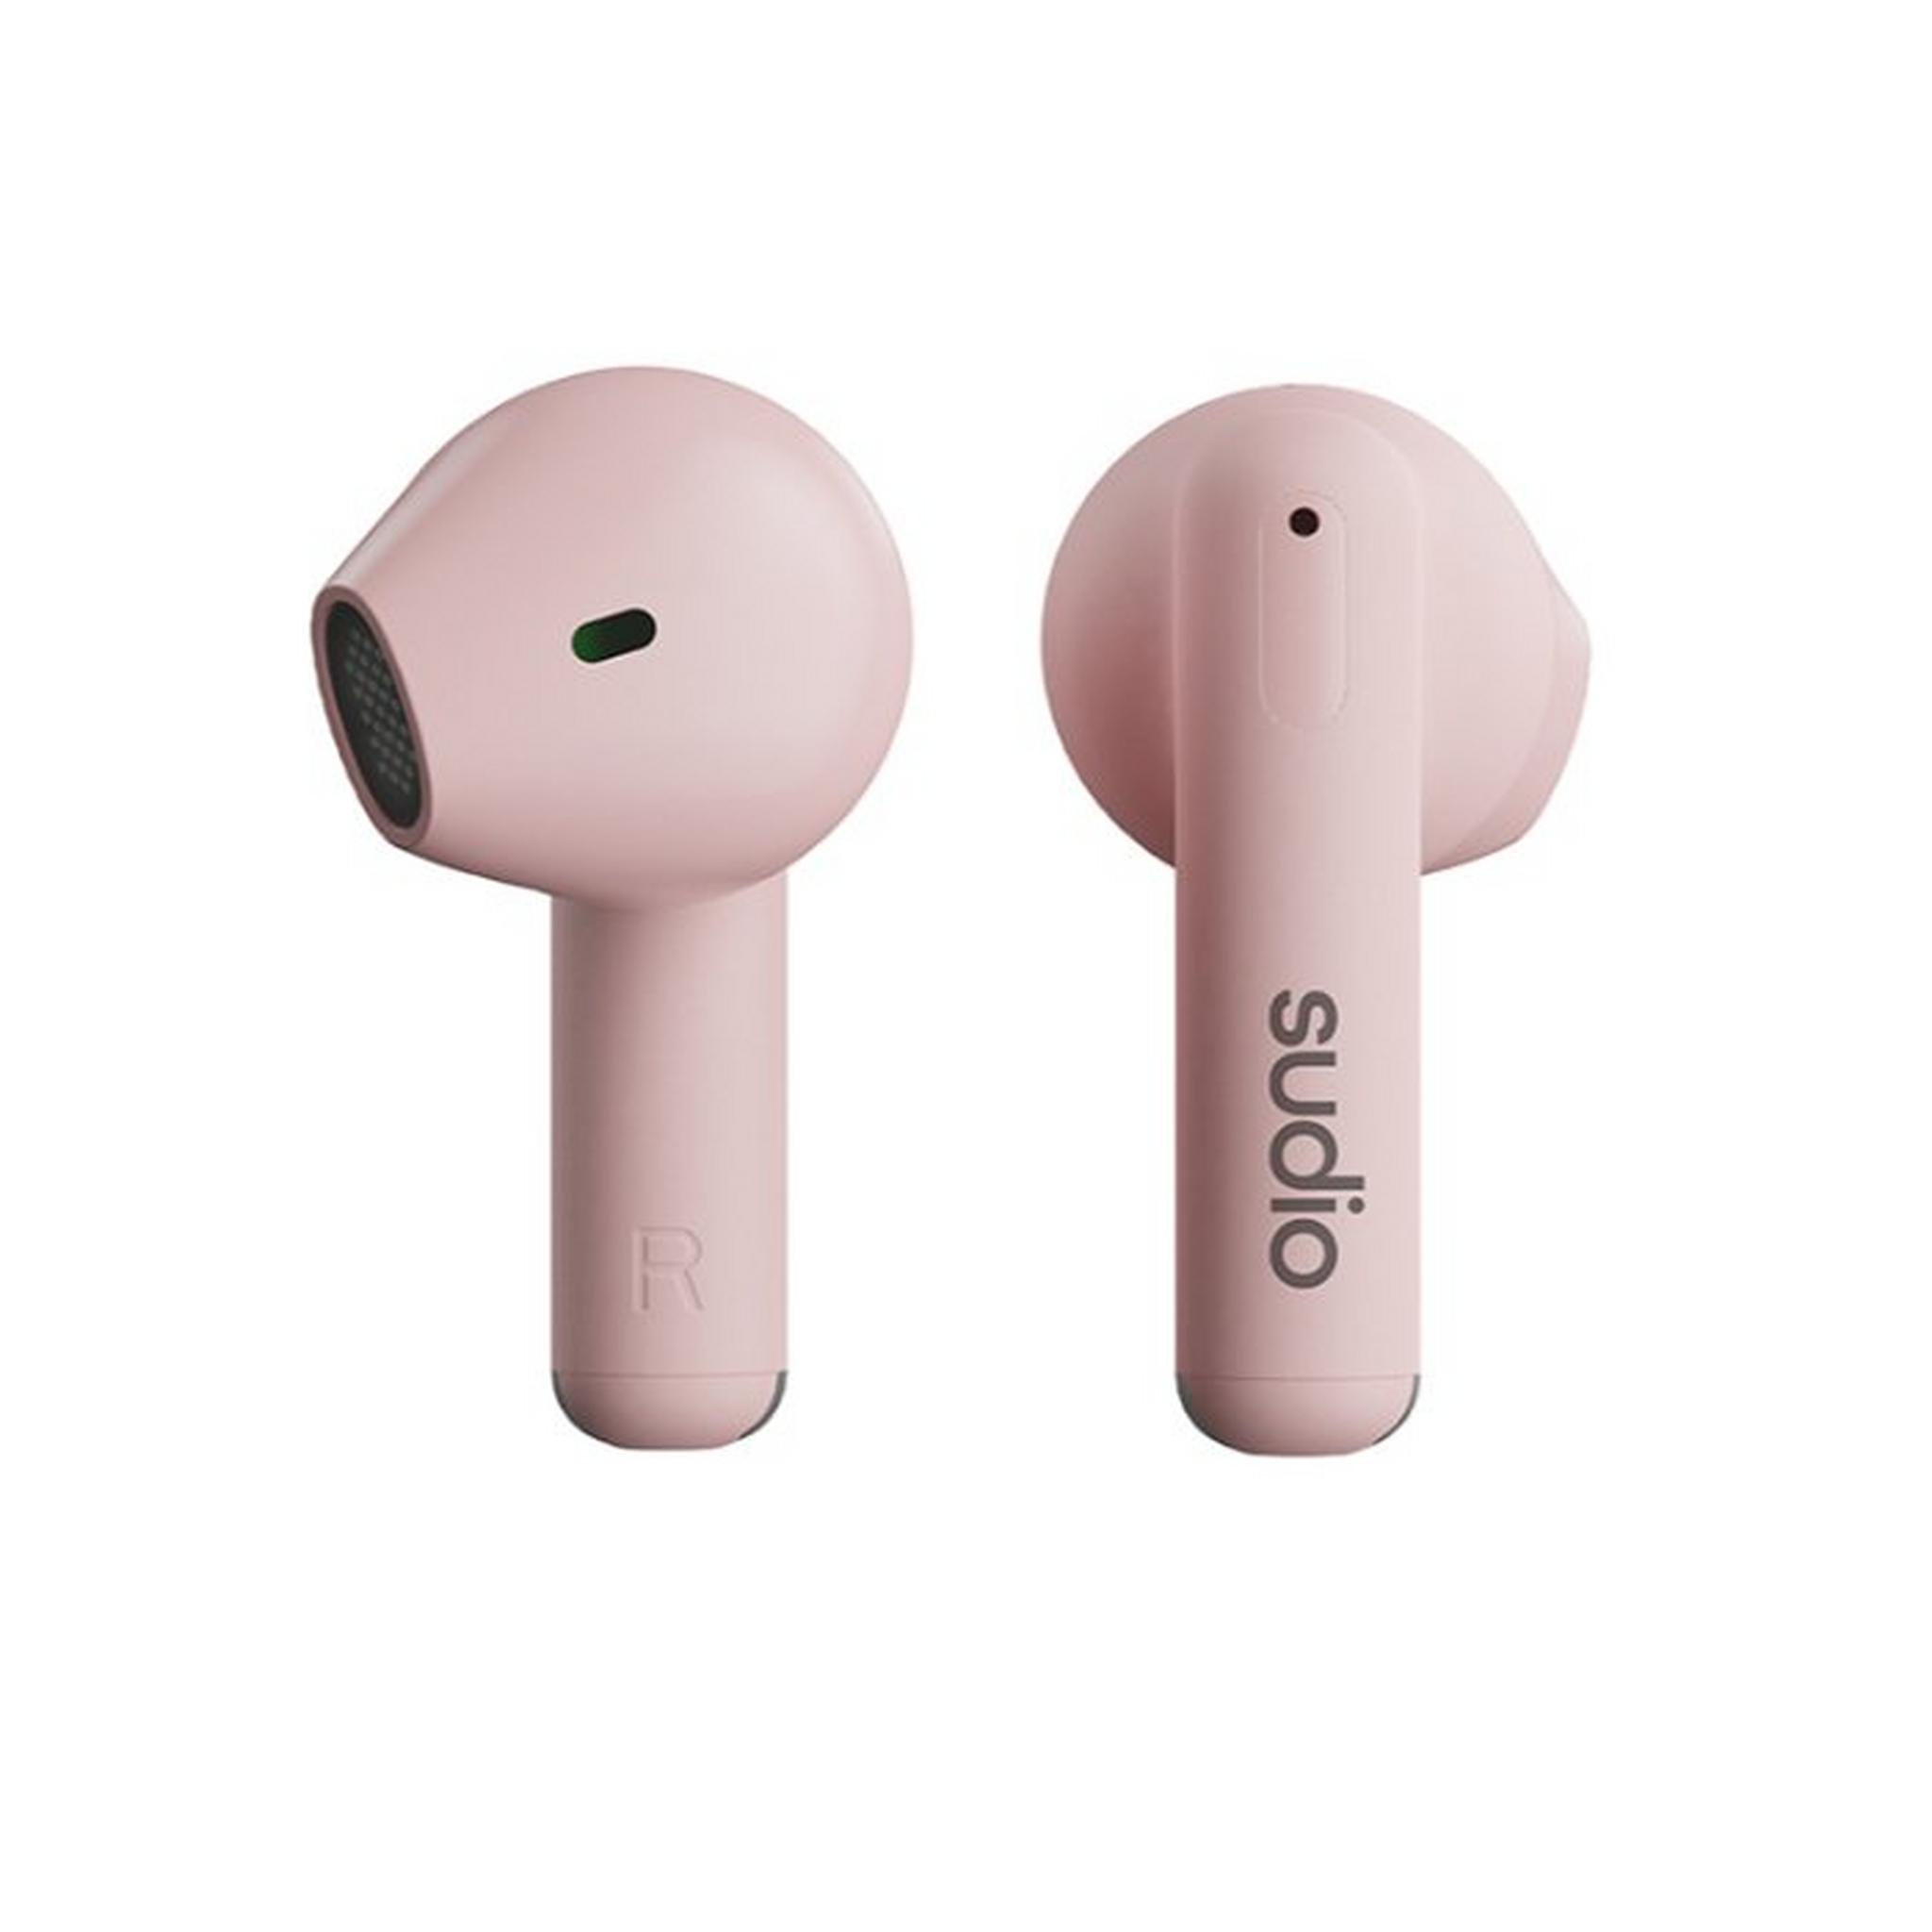 Sudio A1 In-Ear True Wireless Headphone - Pink